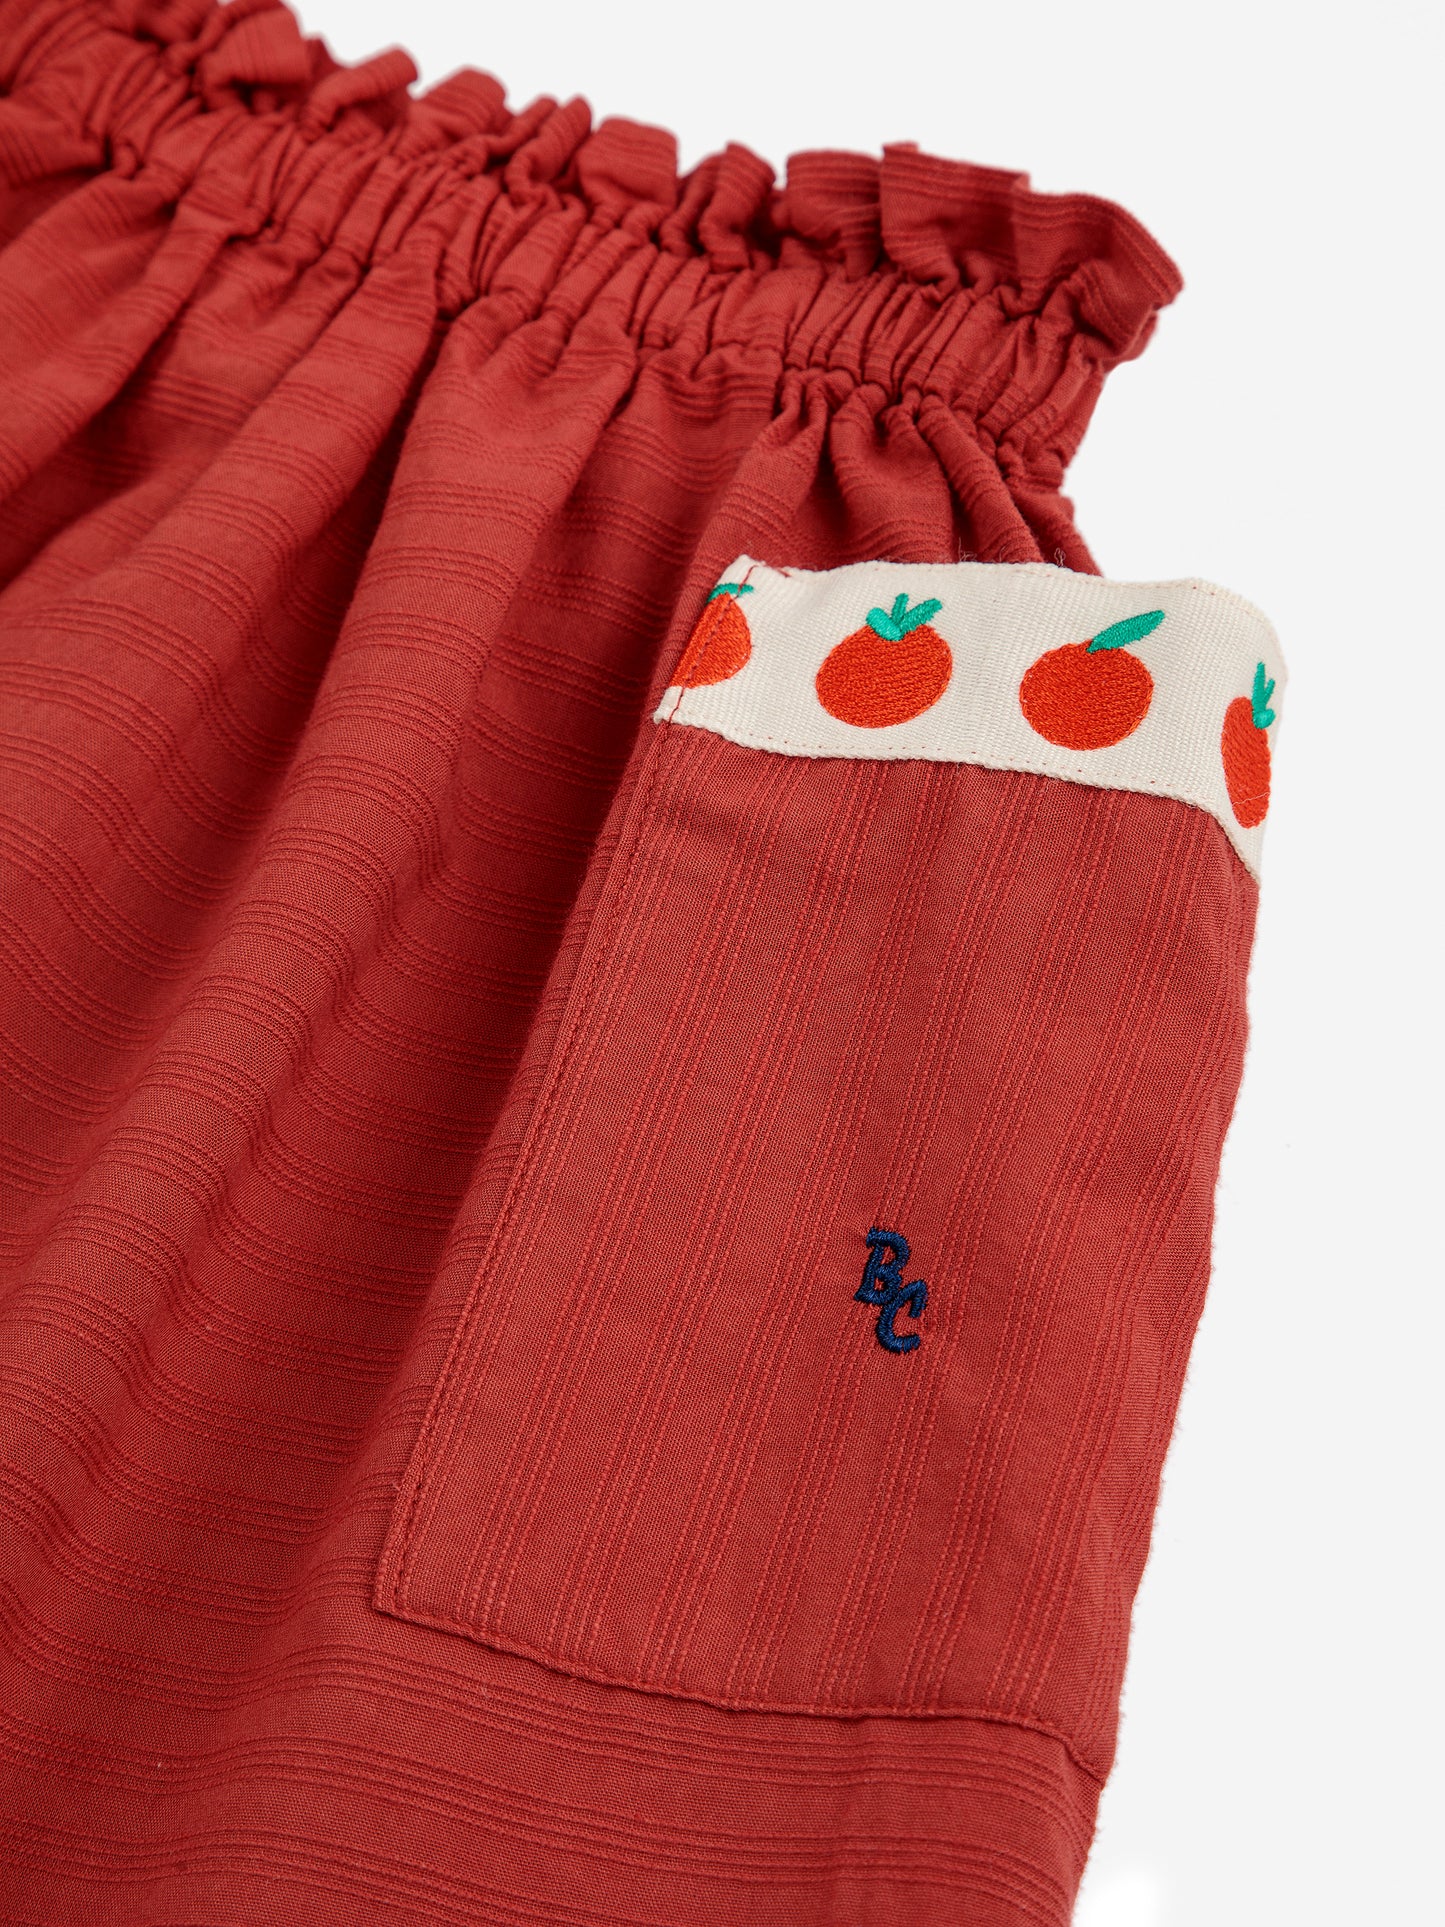 Bobo Choses Pockets Woven Skirt Burgundy Red